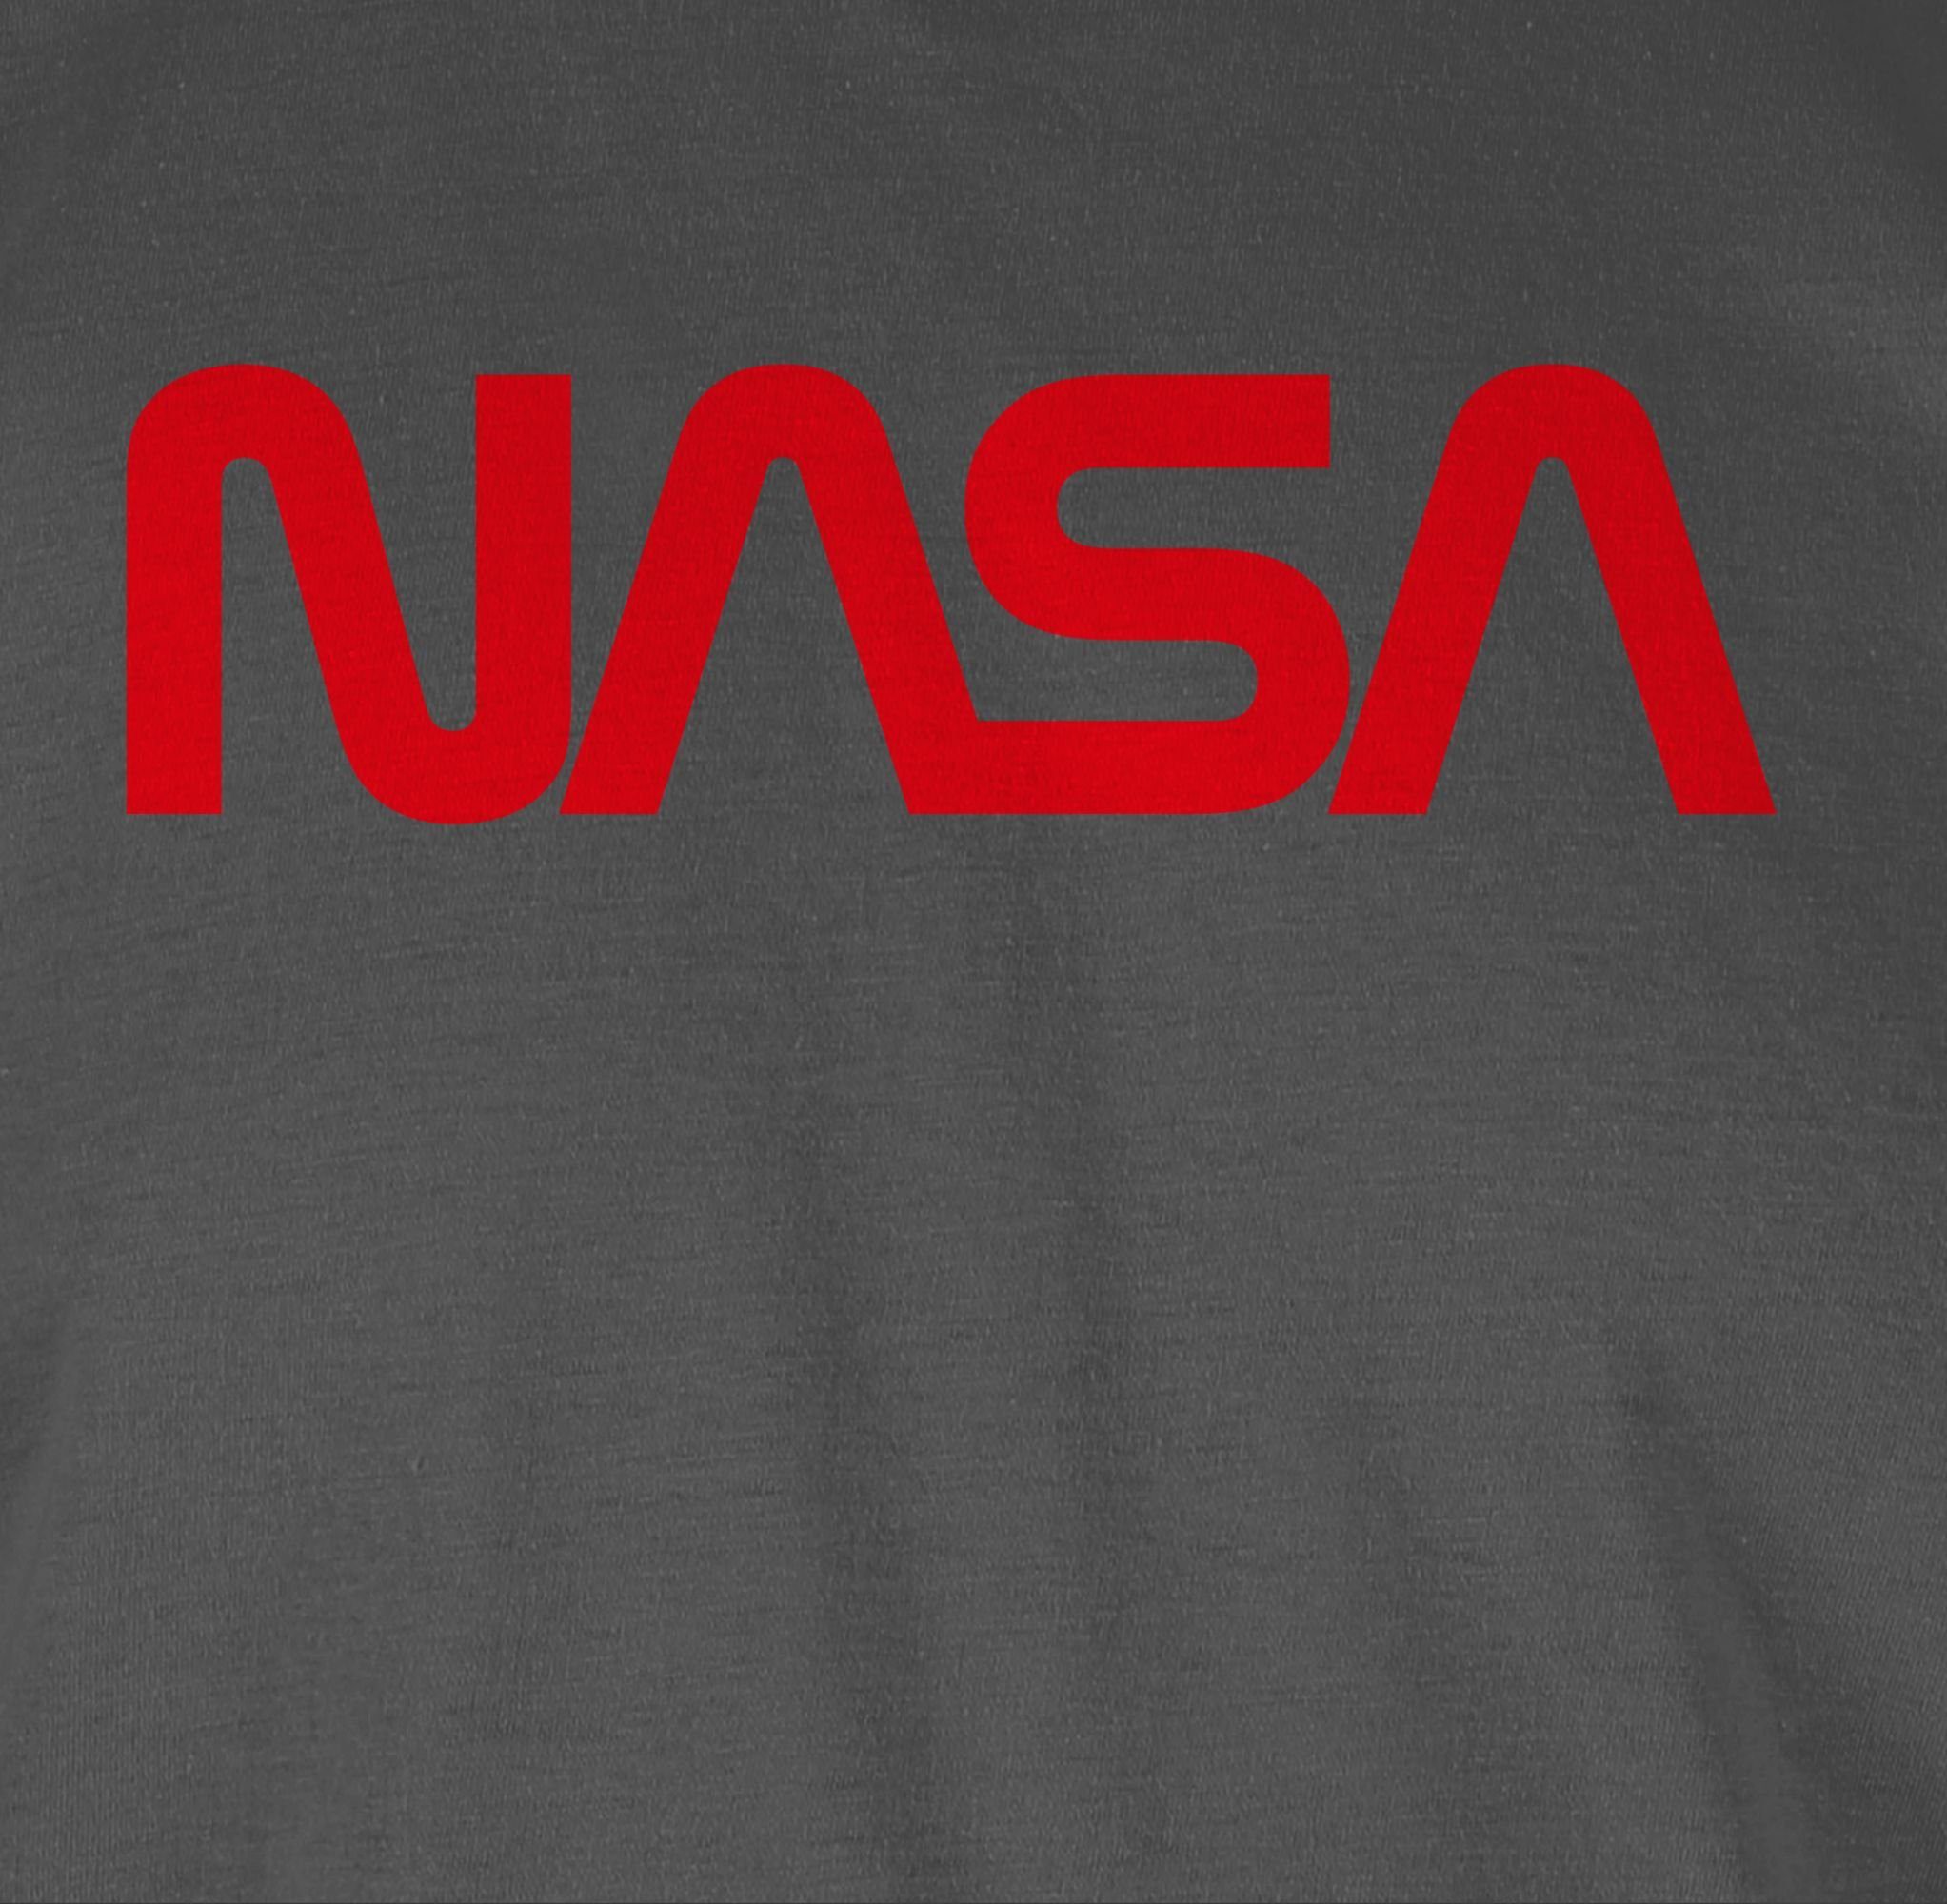 Raumfahrt Geschenke Rundhalsshirt 2 Weltraum Mondlandung Nerd Shirtracer - Astronaut Nasa Dunkelgrau